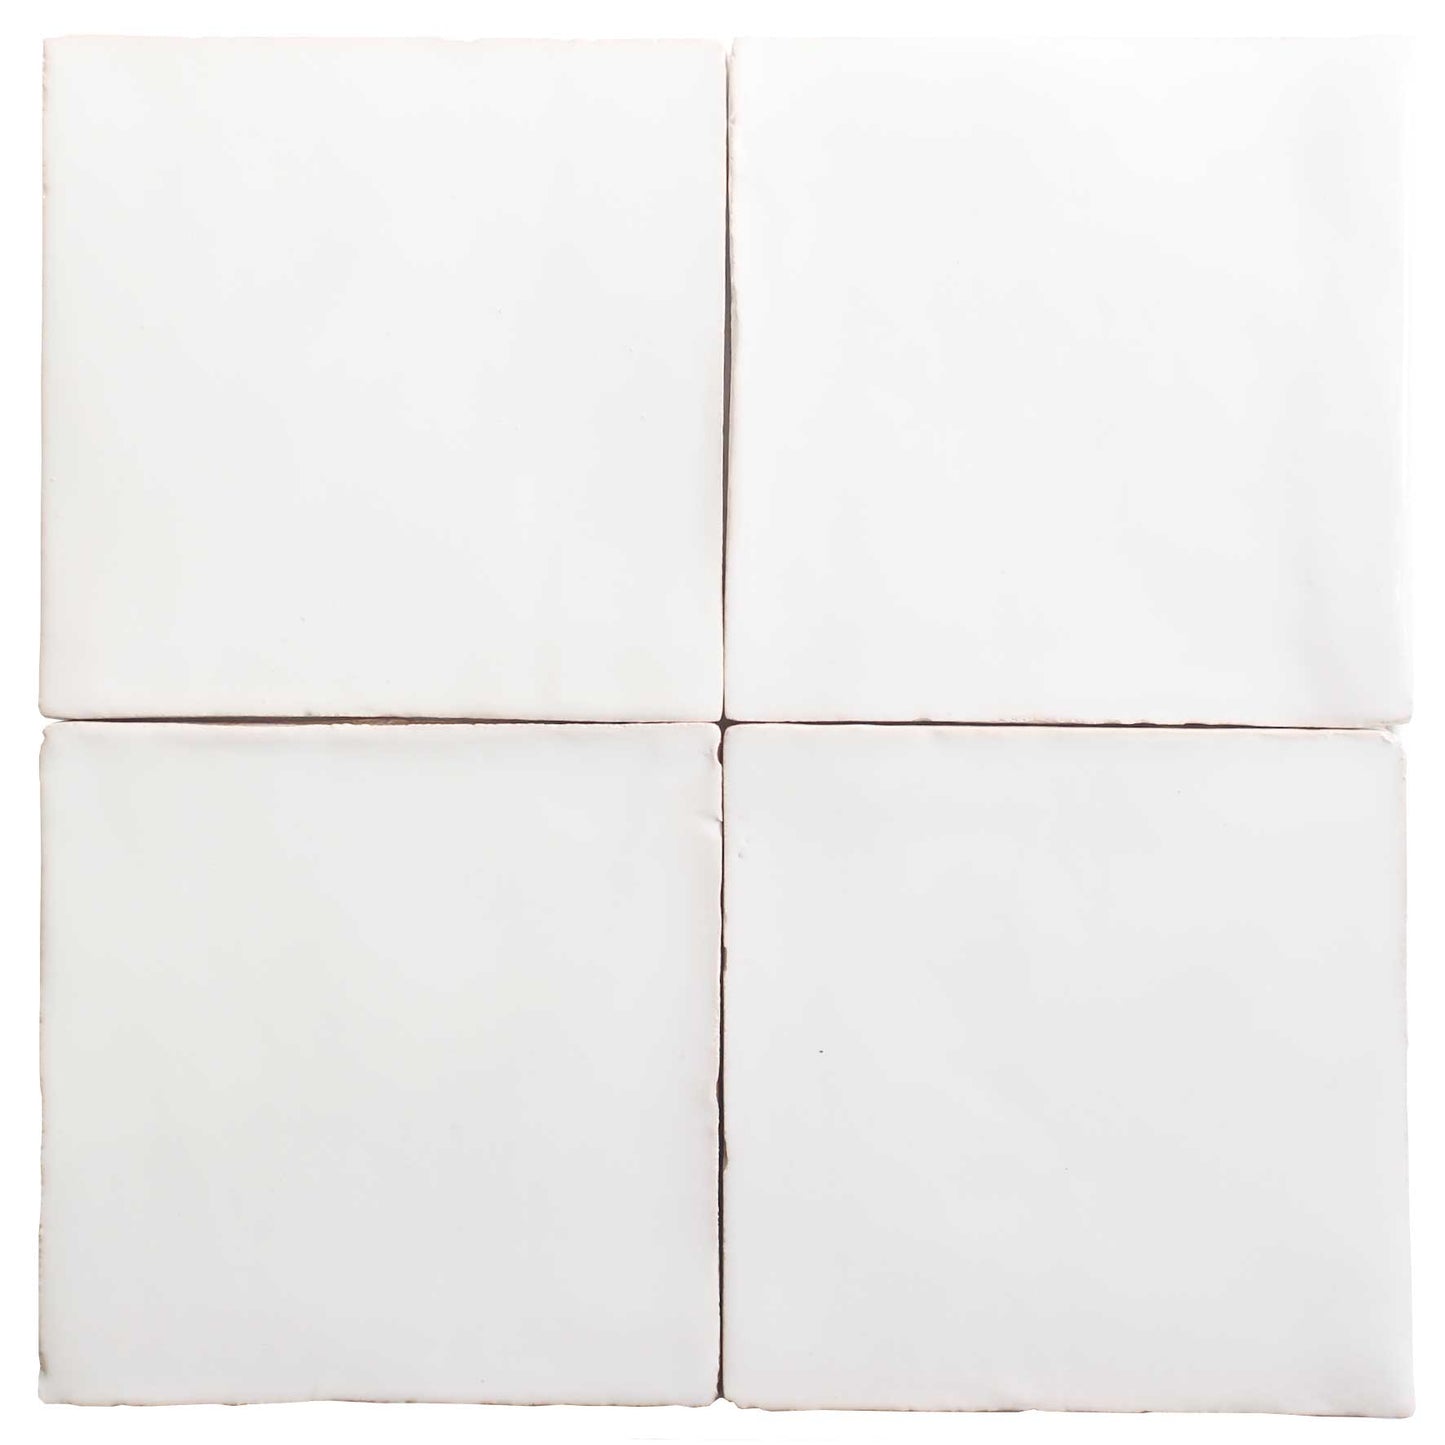 Off-White Glazed Terracotta Tile